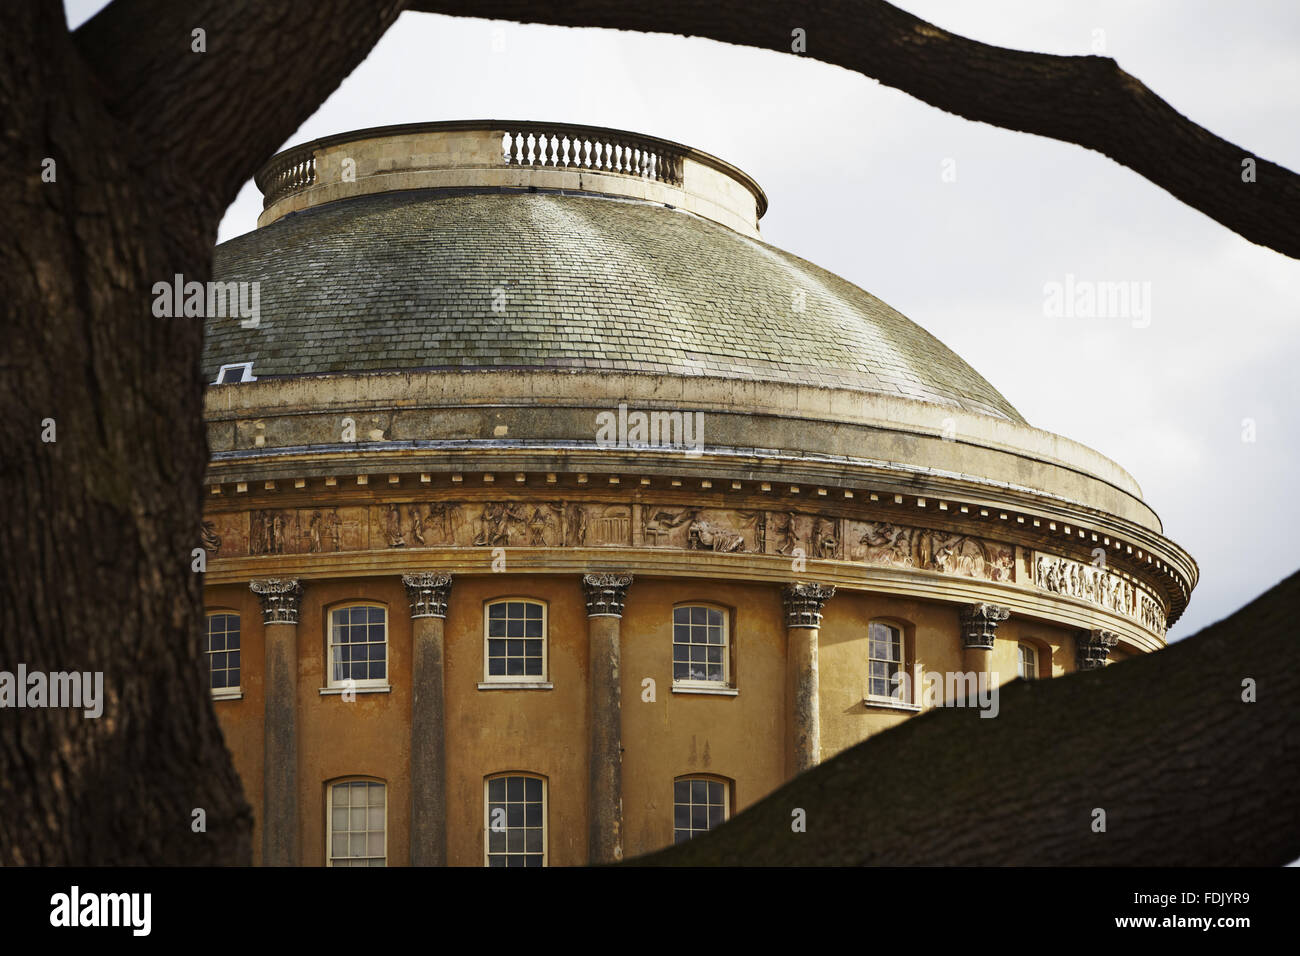 Vue extérieure de la Rotonde encadrée par des branches d'arbre à Bürchen, dans le Suffolk. La maison a été commencé en 1795 mais pas terminé jusqu'à 1830, avec une coupole rotonde avec colonnes classcial et frises et des couloirs reliant courbes ailes rectangulaires de chaque côté. Banque D'Images